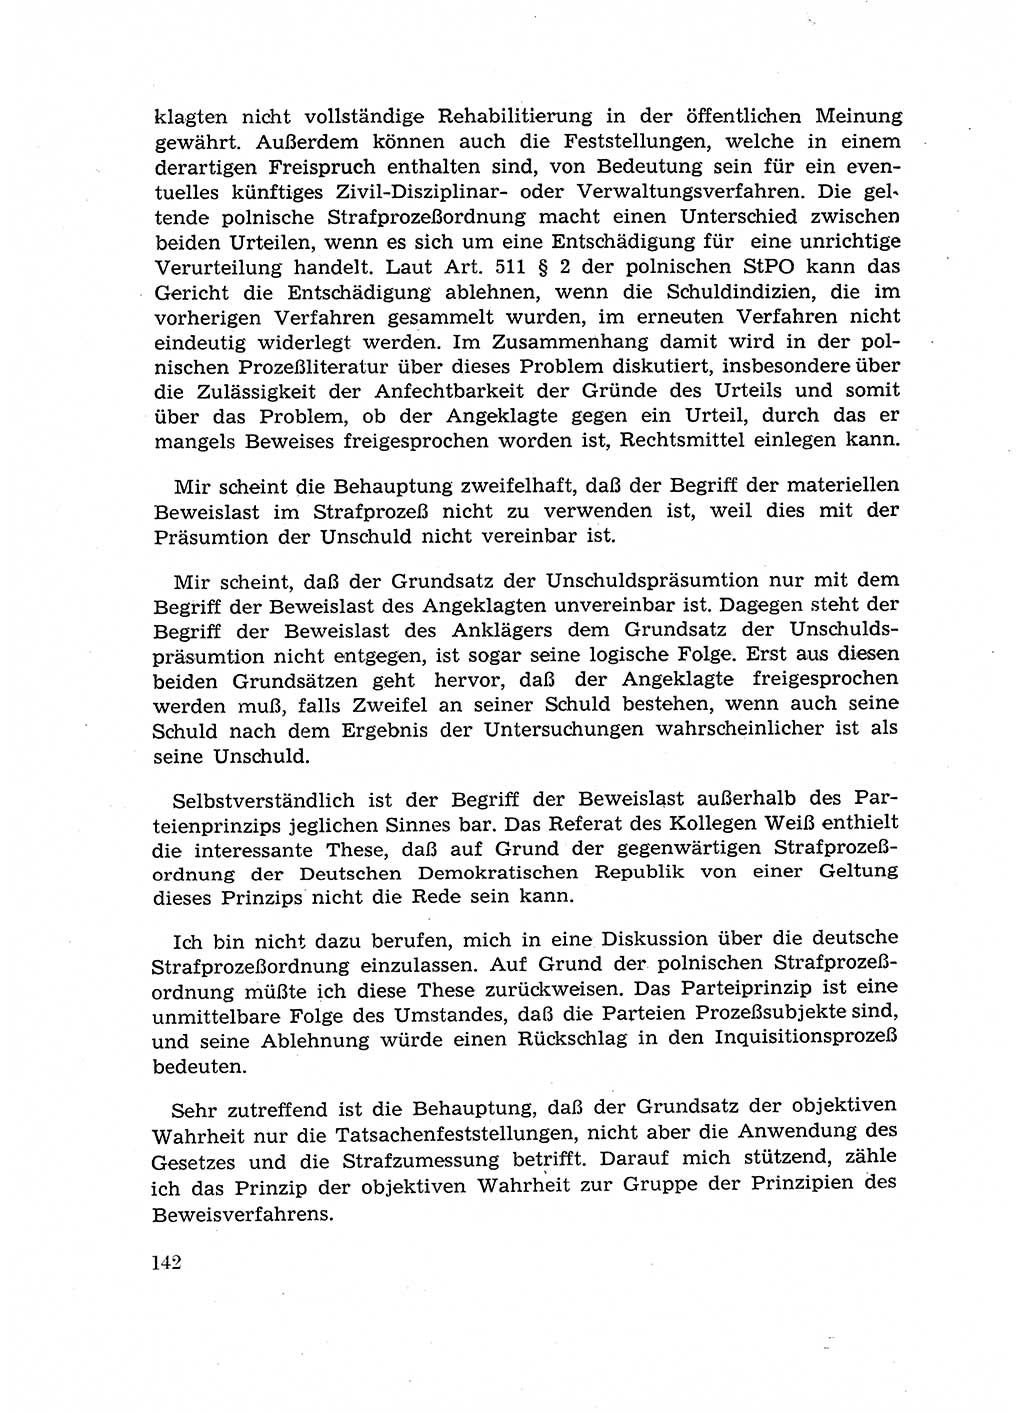 Fragen des Beweisrechts im Strafprozess [Deutsche Demokratische Republik (DDR)] 1956, Seite 142 (Fr. BeweisR. Str.-Proz. DDR 1956, S. 142)